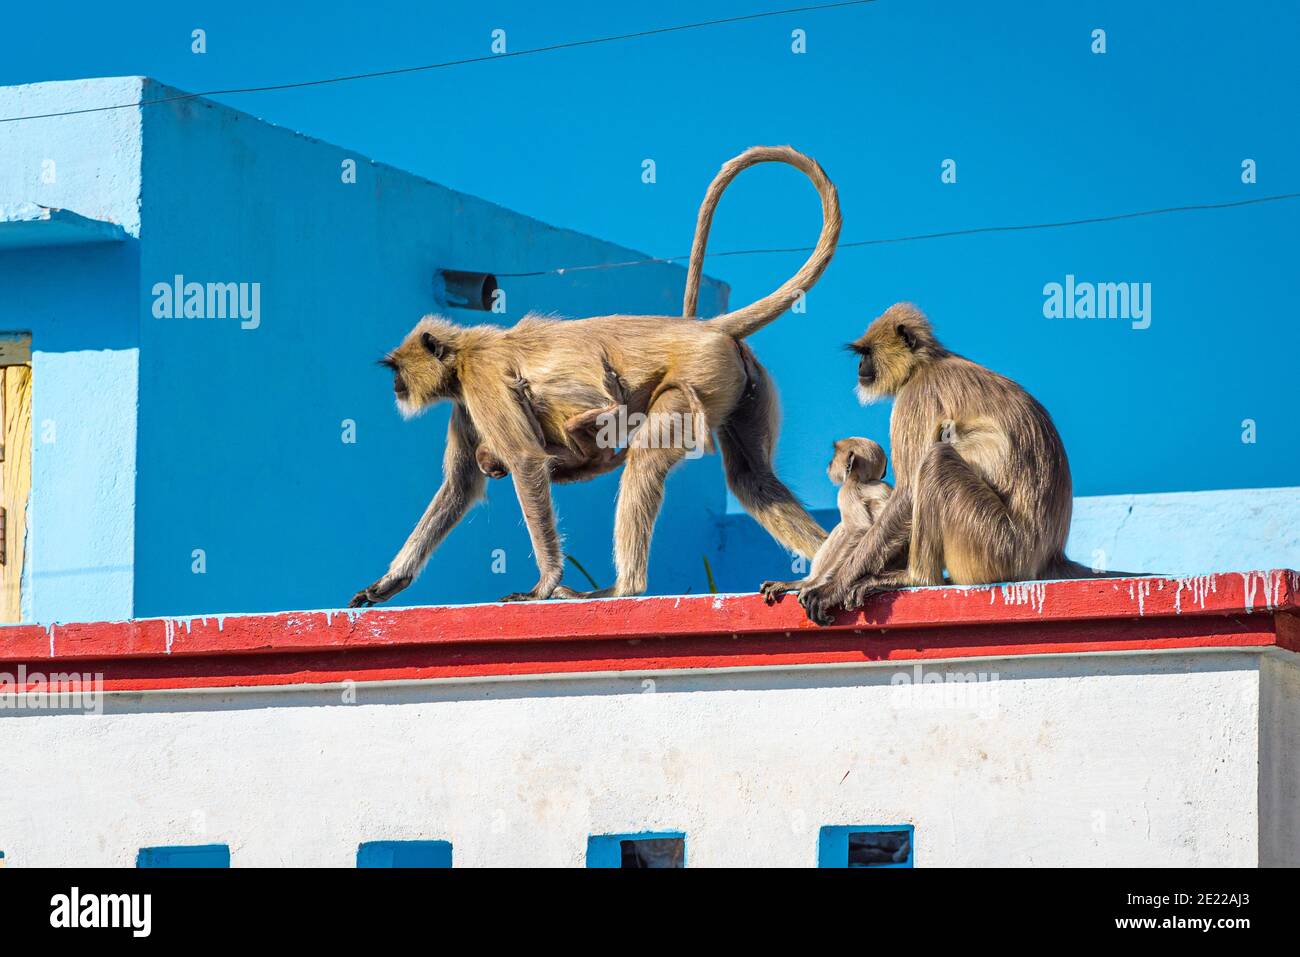 Animaux sauvages dans la ville en Inde: Deux femelles de langur gris (Semnopithecus dussumieri) avec des bébés de singe envahissent un toit à Udaipur. Banque D'Images